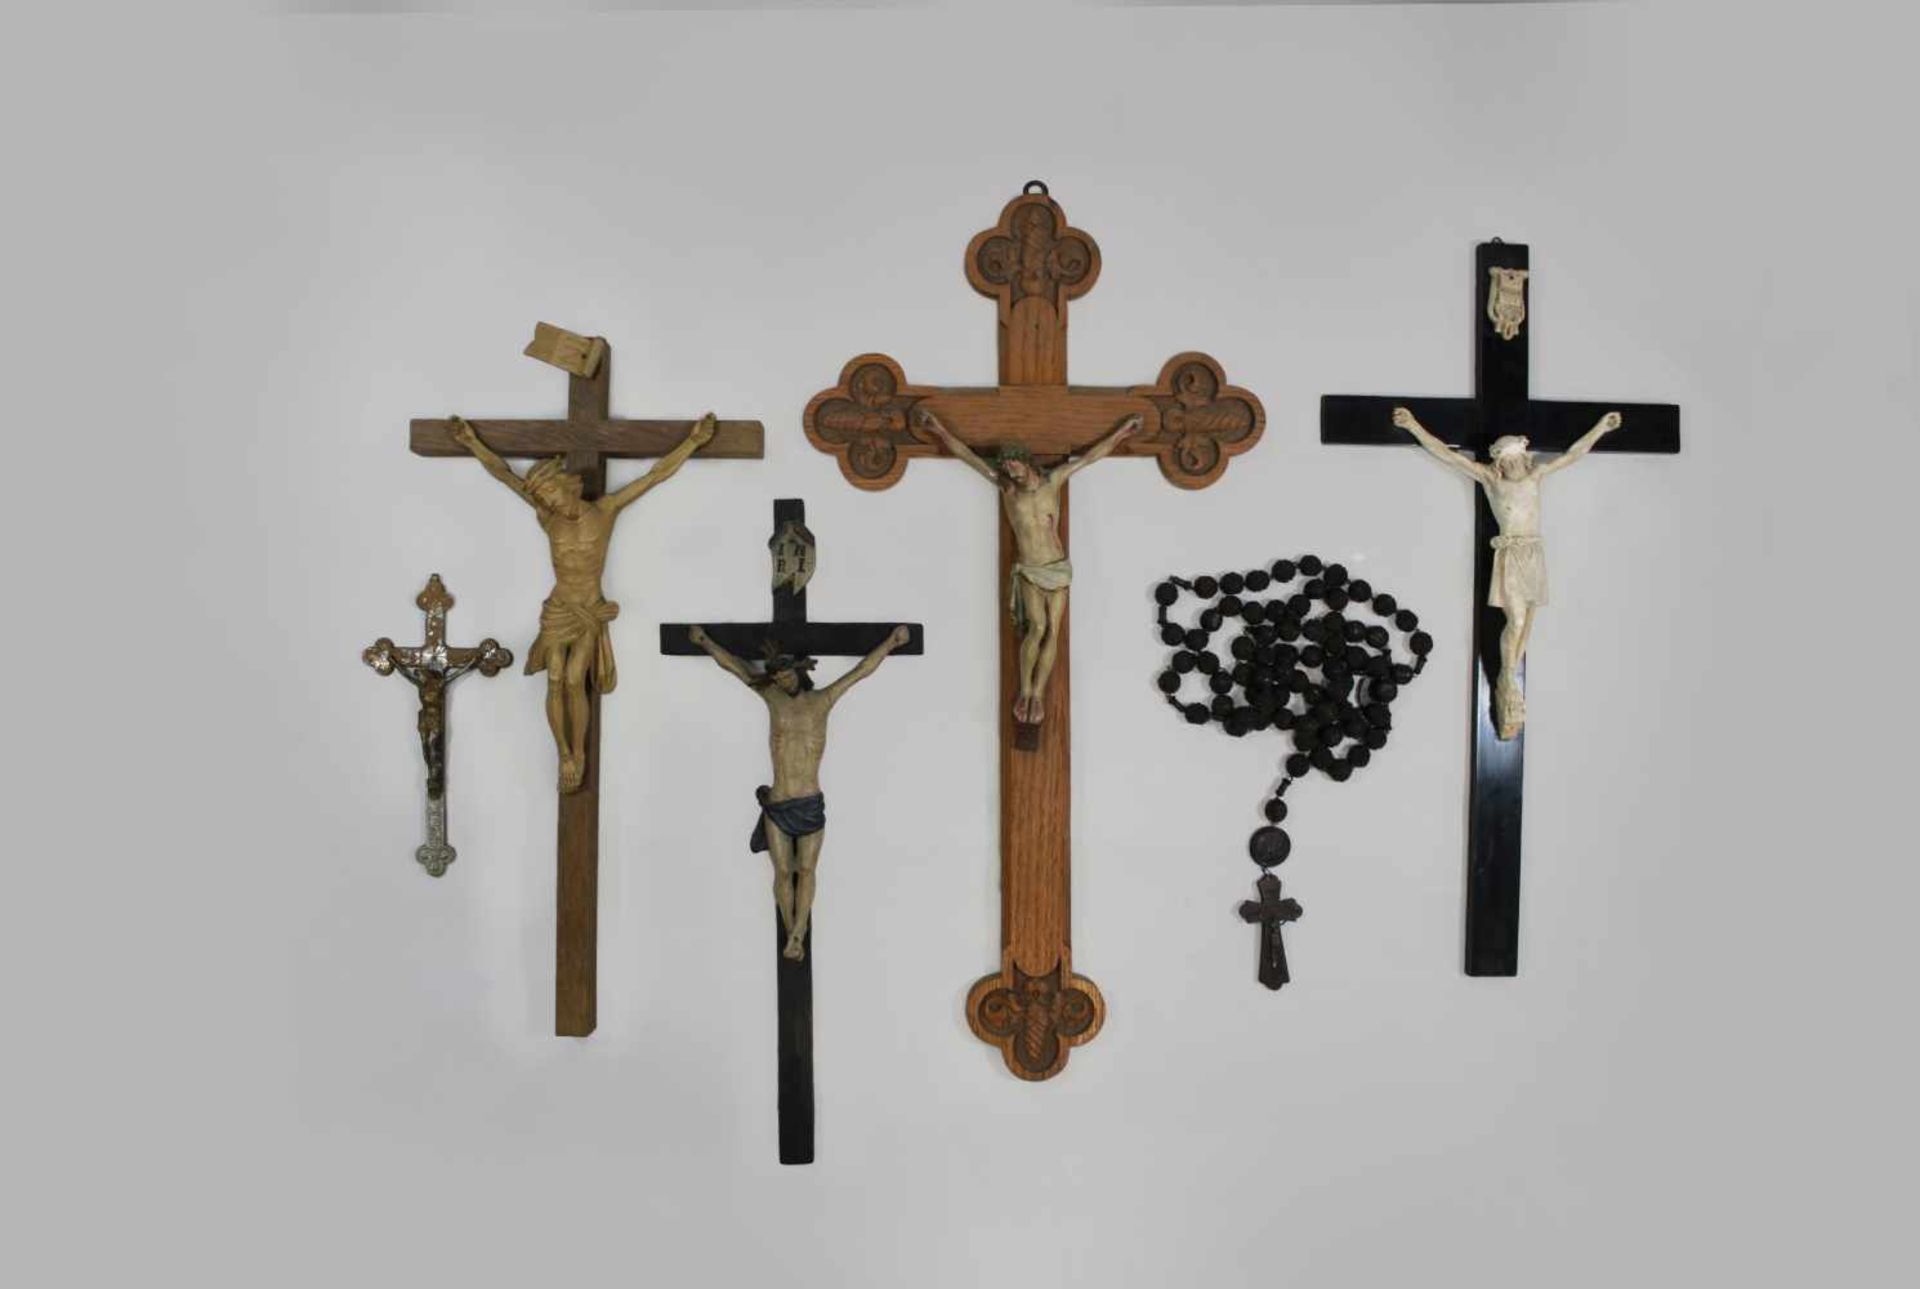 Rosenkranz + 5 Kruzifixe, vier Kruzifixe aus Holz, teilweise polychrom gefasst, eins davon als